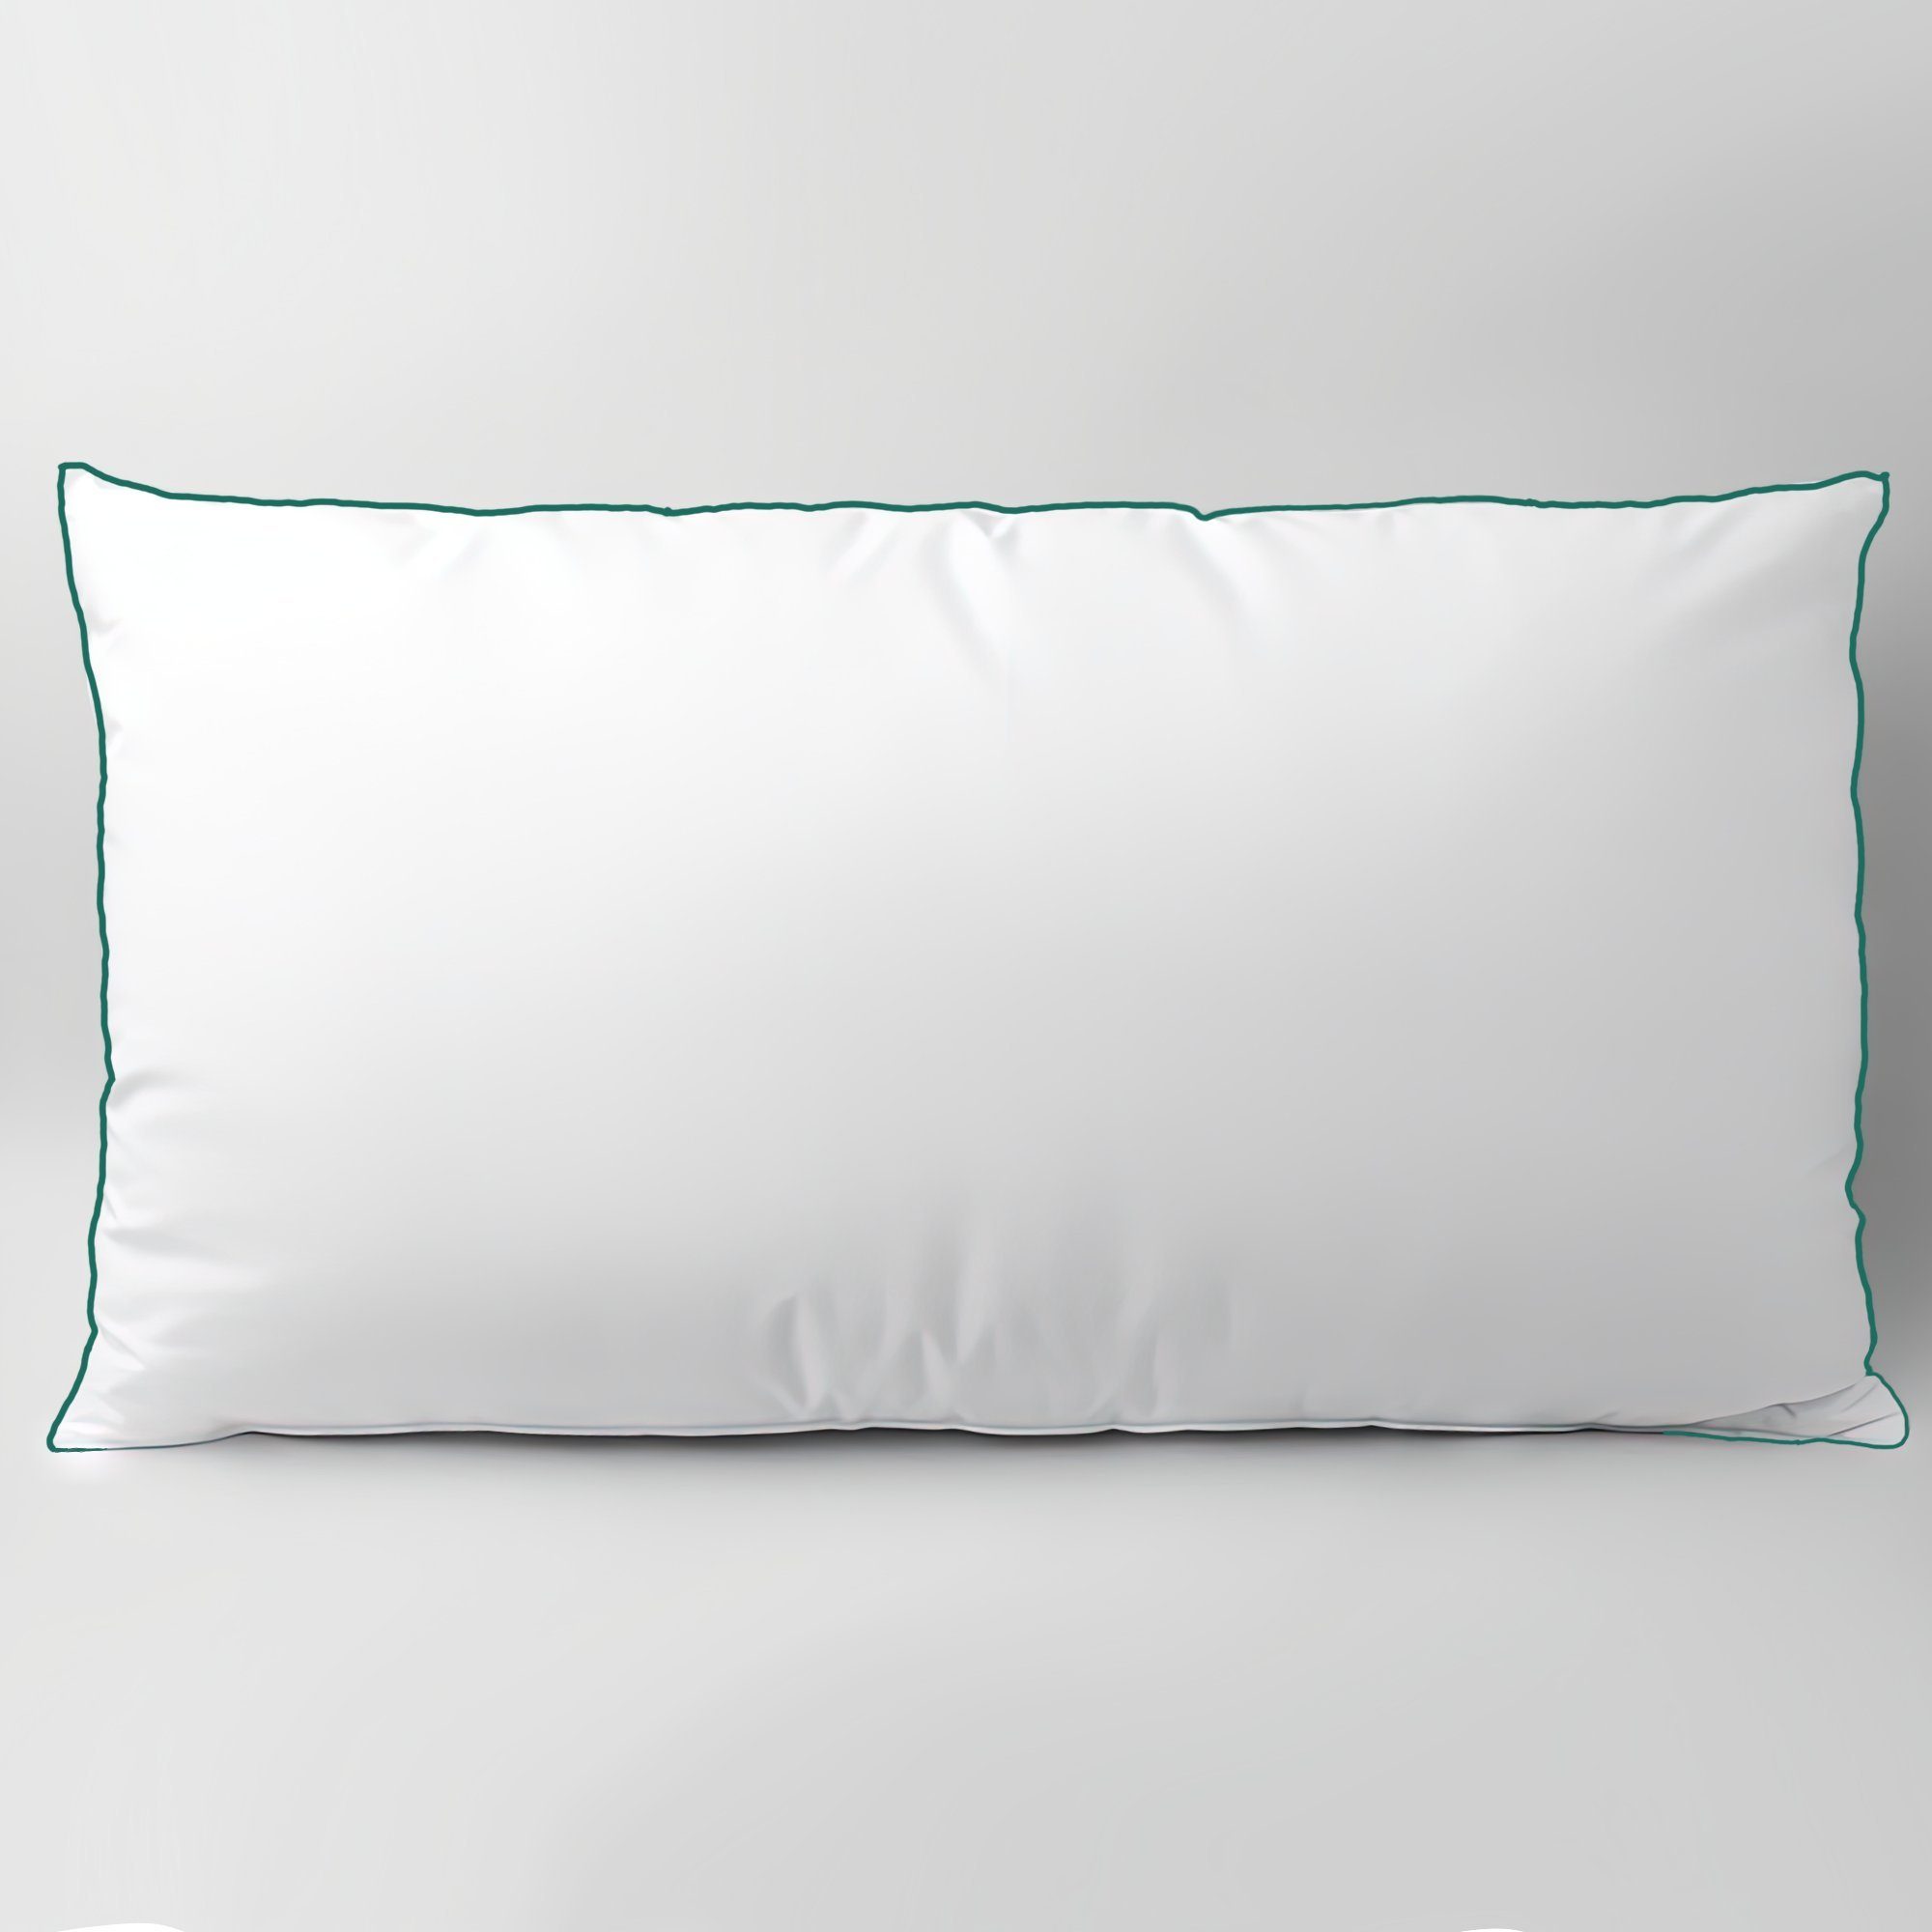 Kopfkissen, KNERST, Füllung: FitForm Technologie – 100% Polyester, ergonomisches Schlafkissen ideal für jede Schlafposition, Подушки mit eleganter, grüner Biese